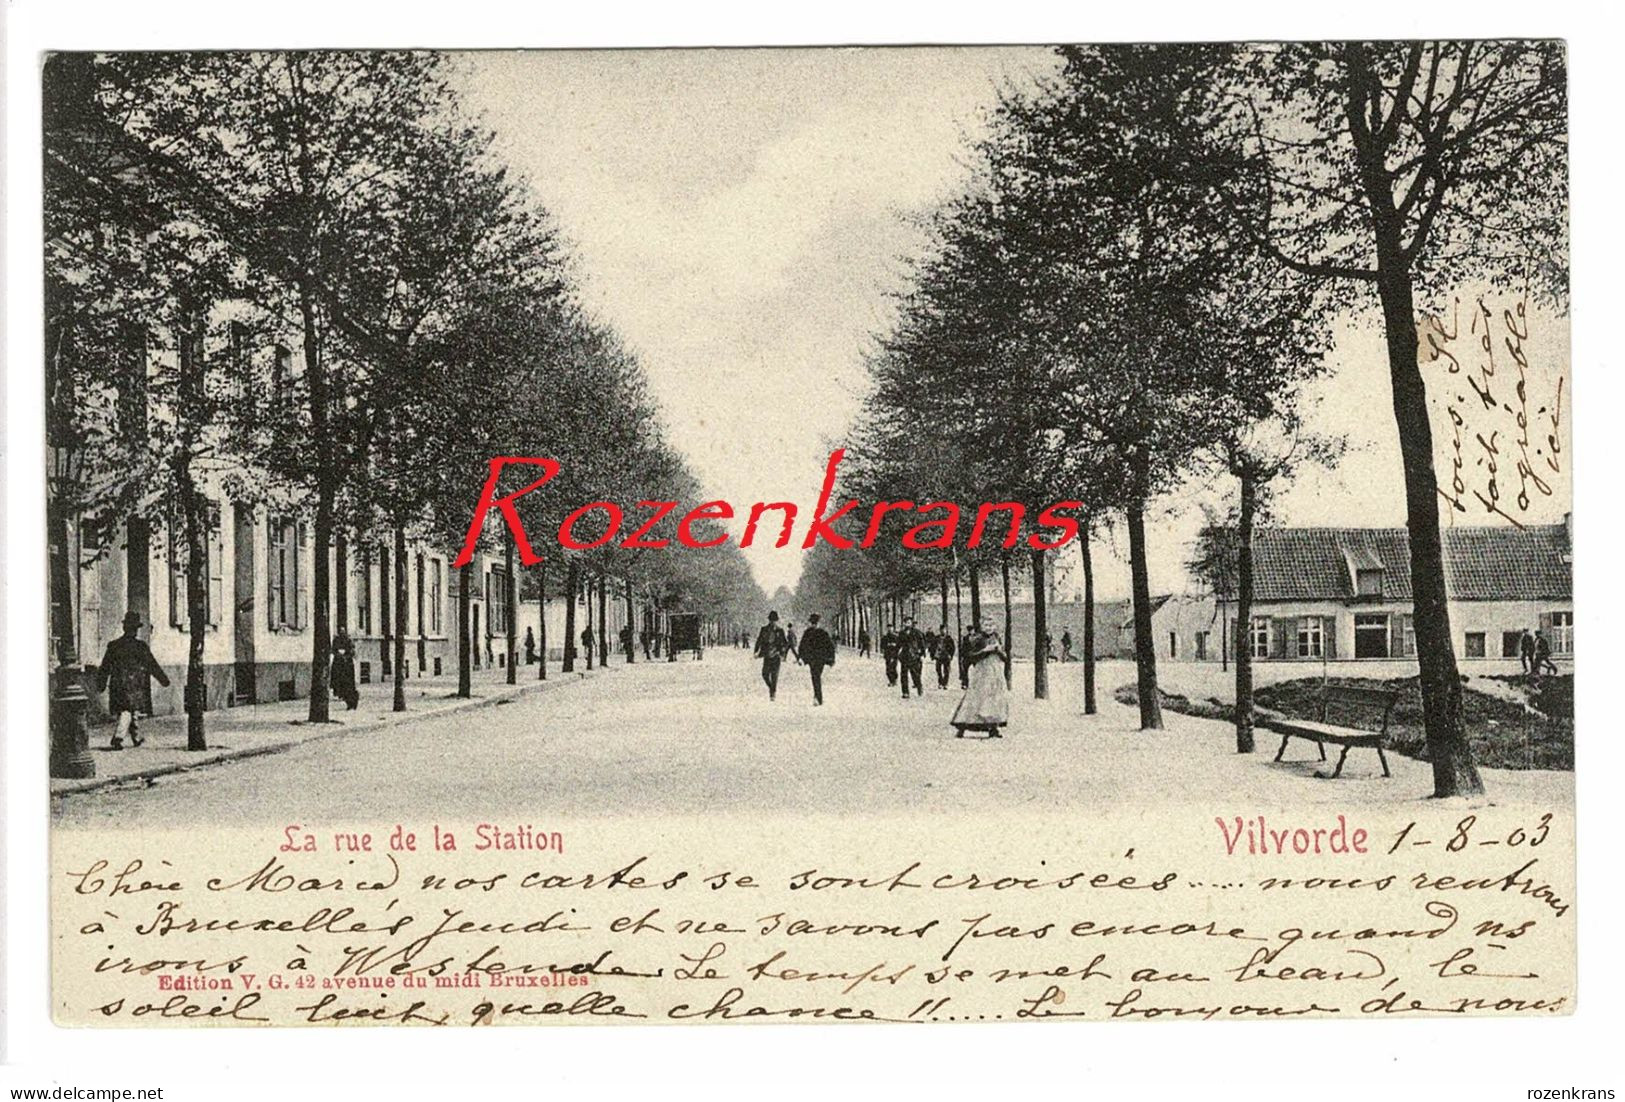 Vroege Kaart 1903 Vilvoorde Vilvorde Stationlei La Rue De La Station (In Mooie Staat) - Vilvoorde